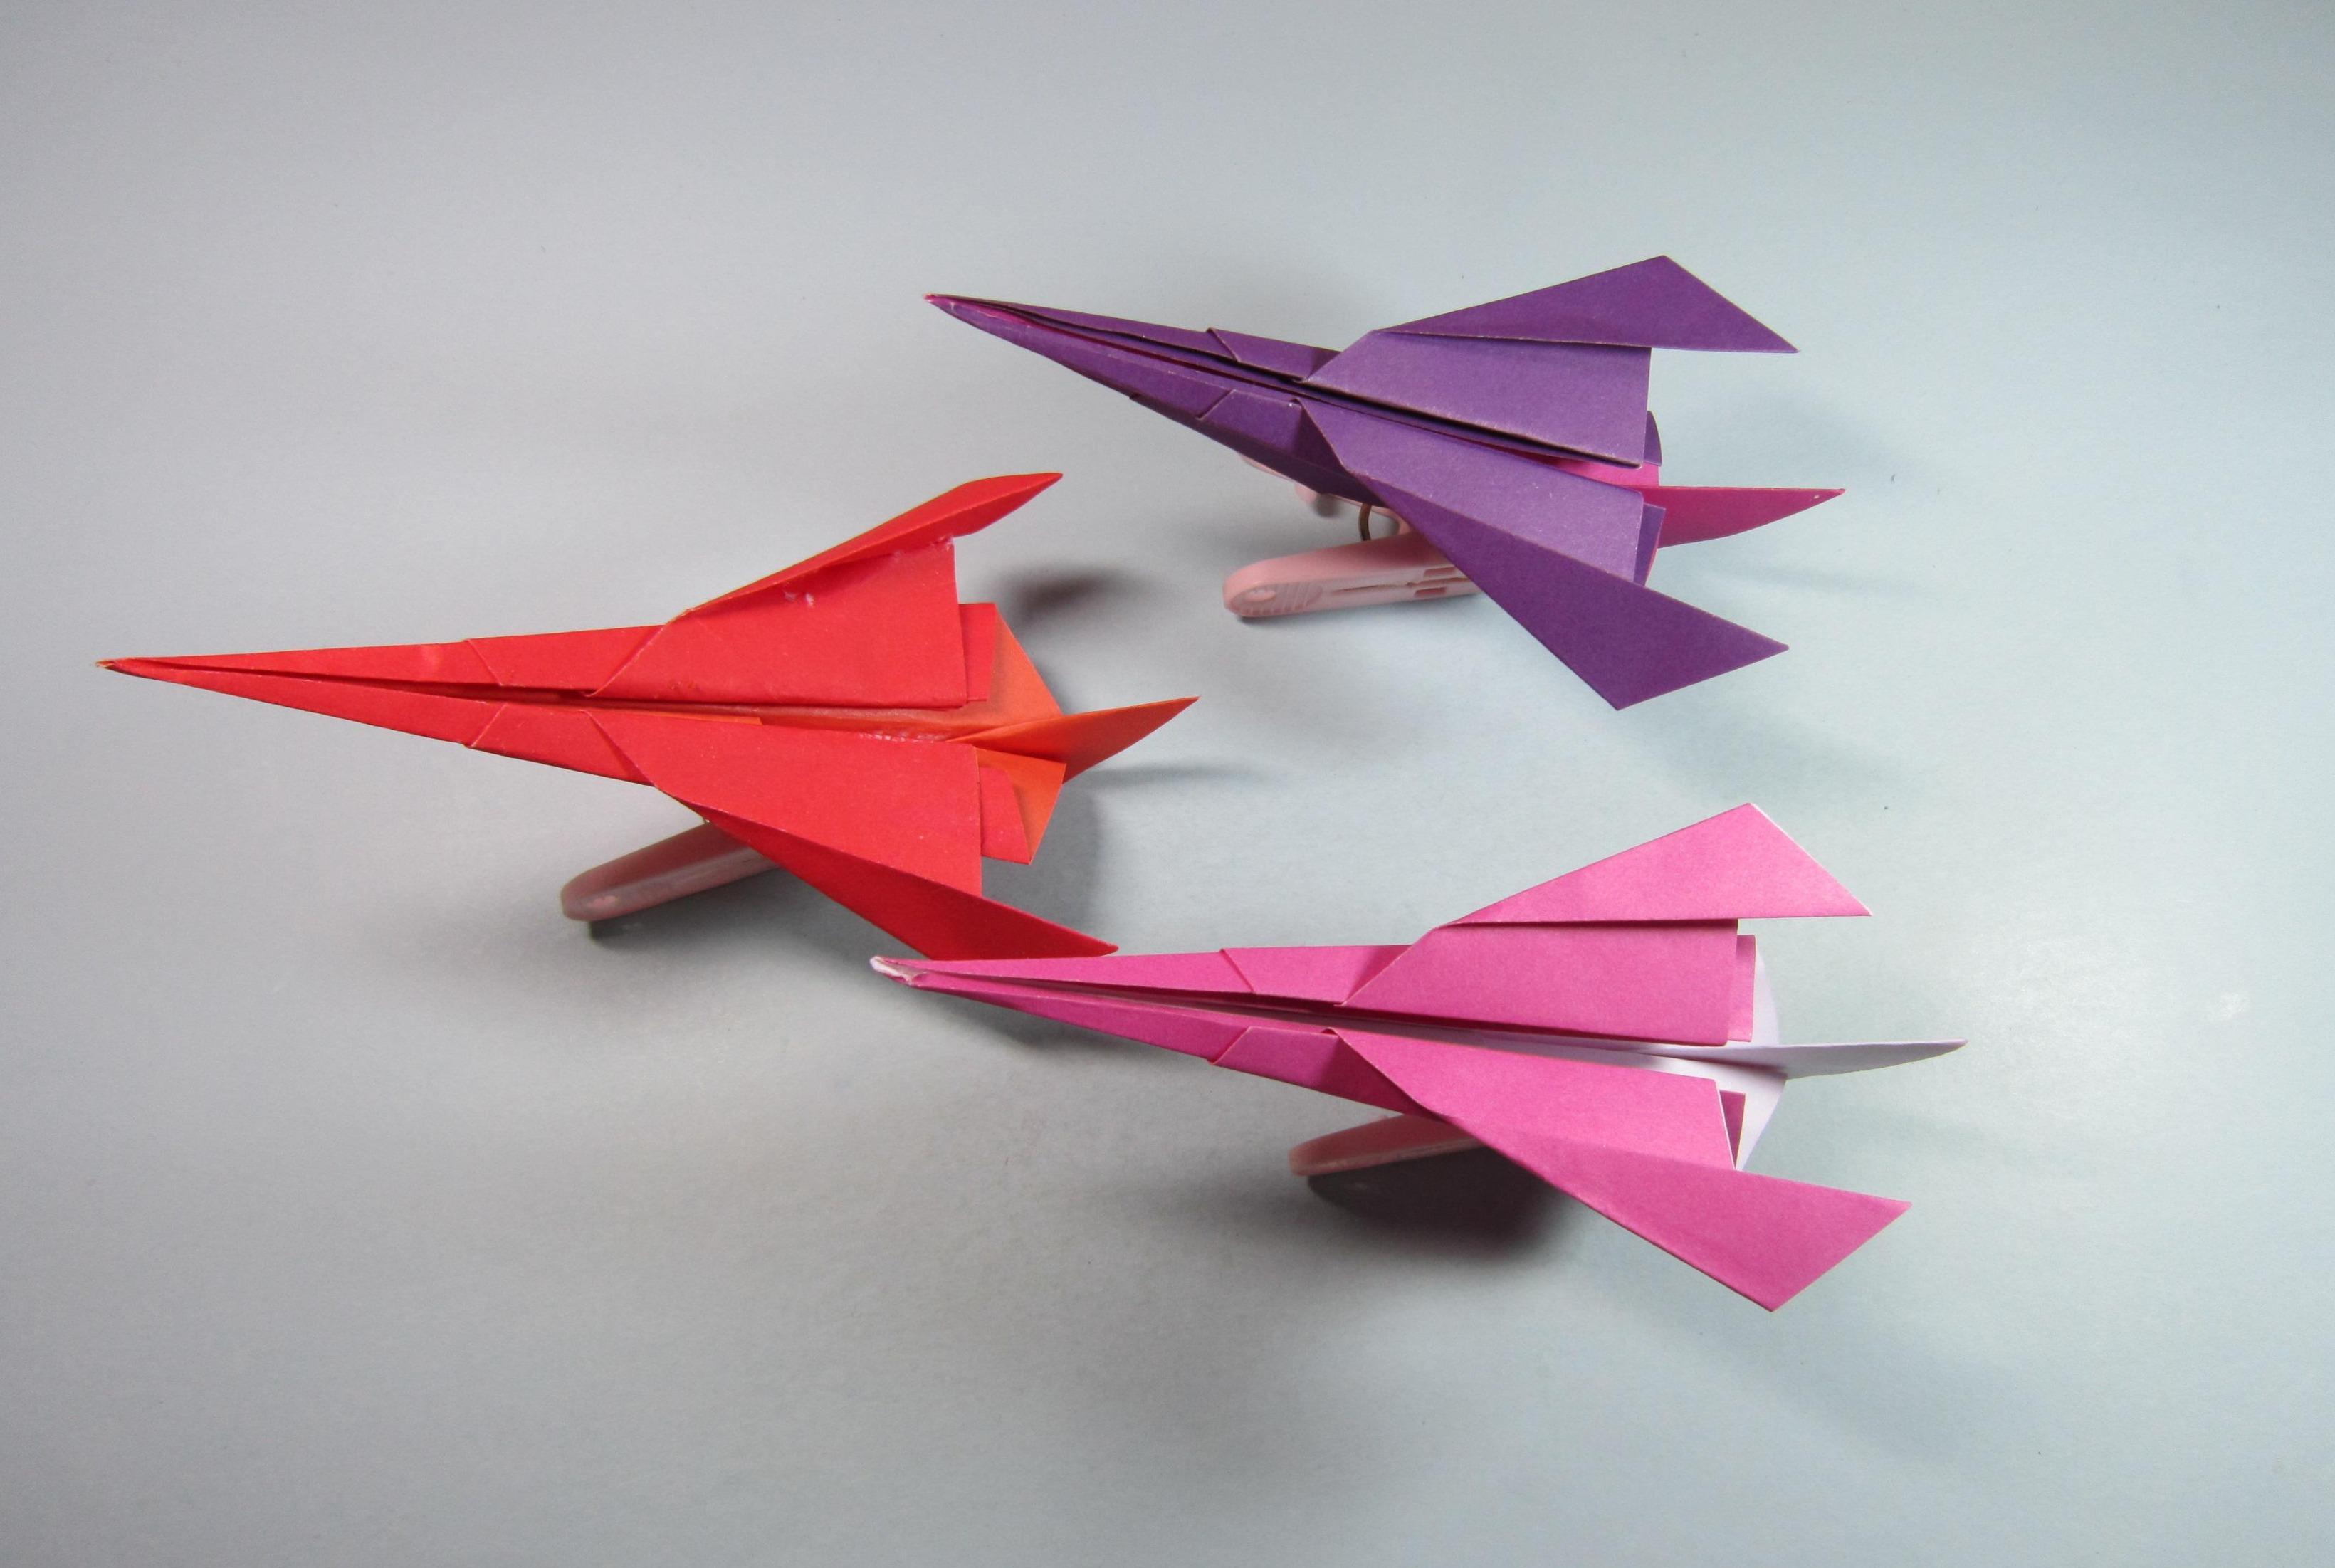 视频:趣味手工折纸飞机视频,一张纸折出超酷的星际战斗机